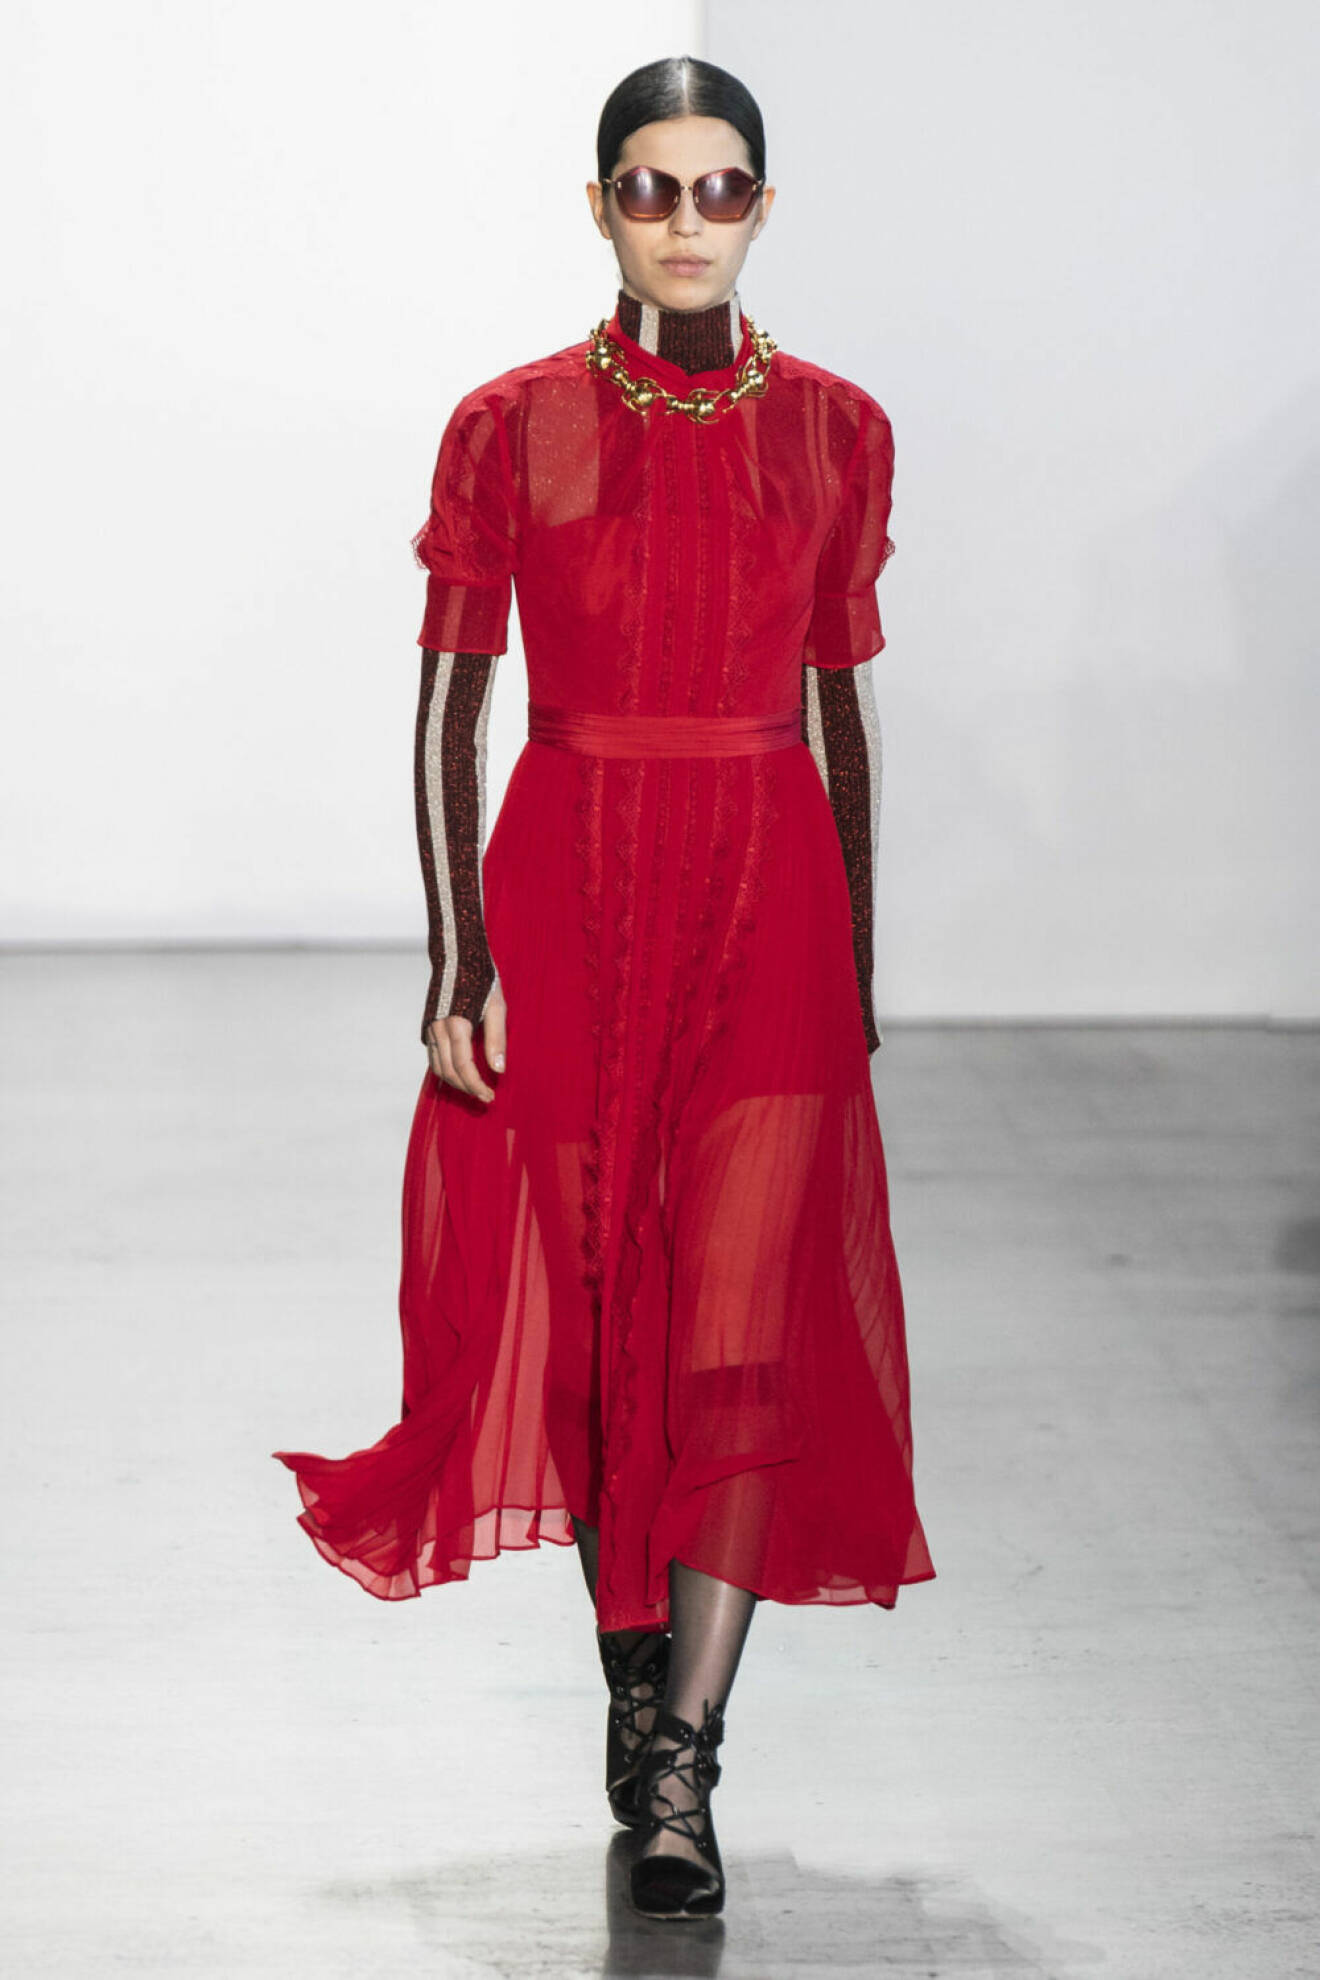 NYFW Self Portrait, röd plisserad klänning med volanger.